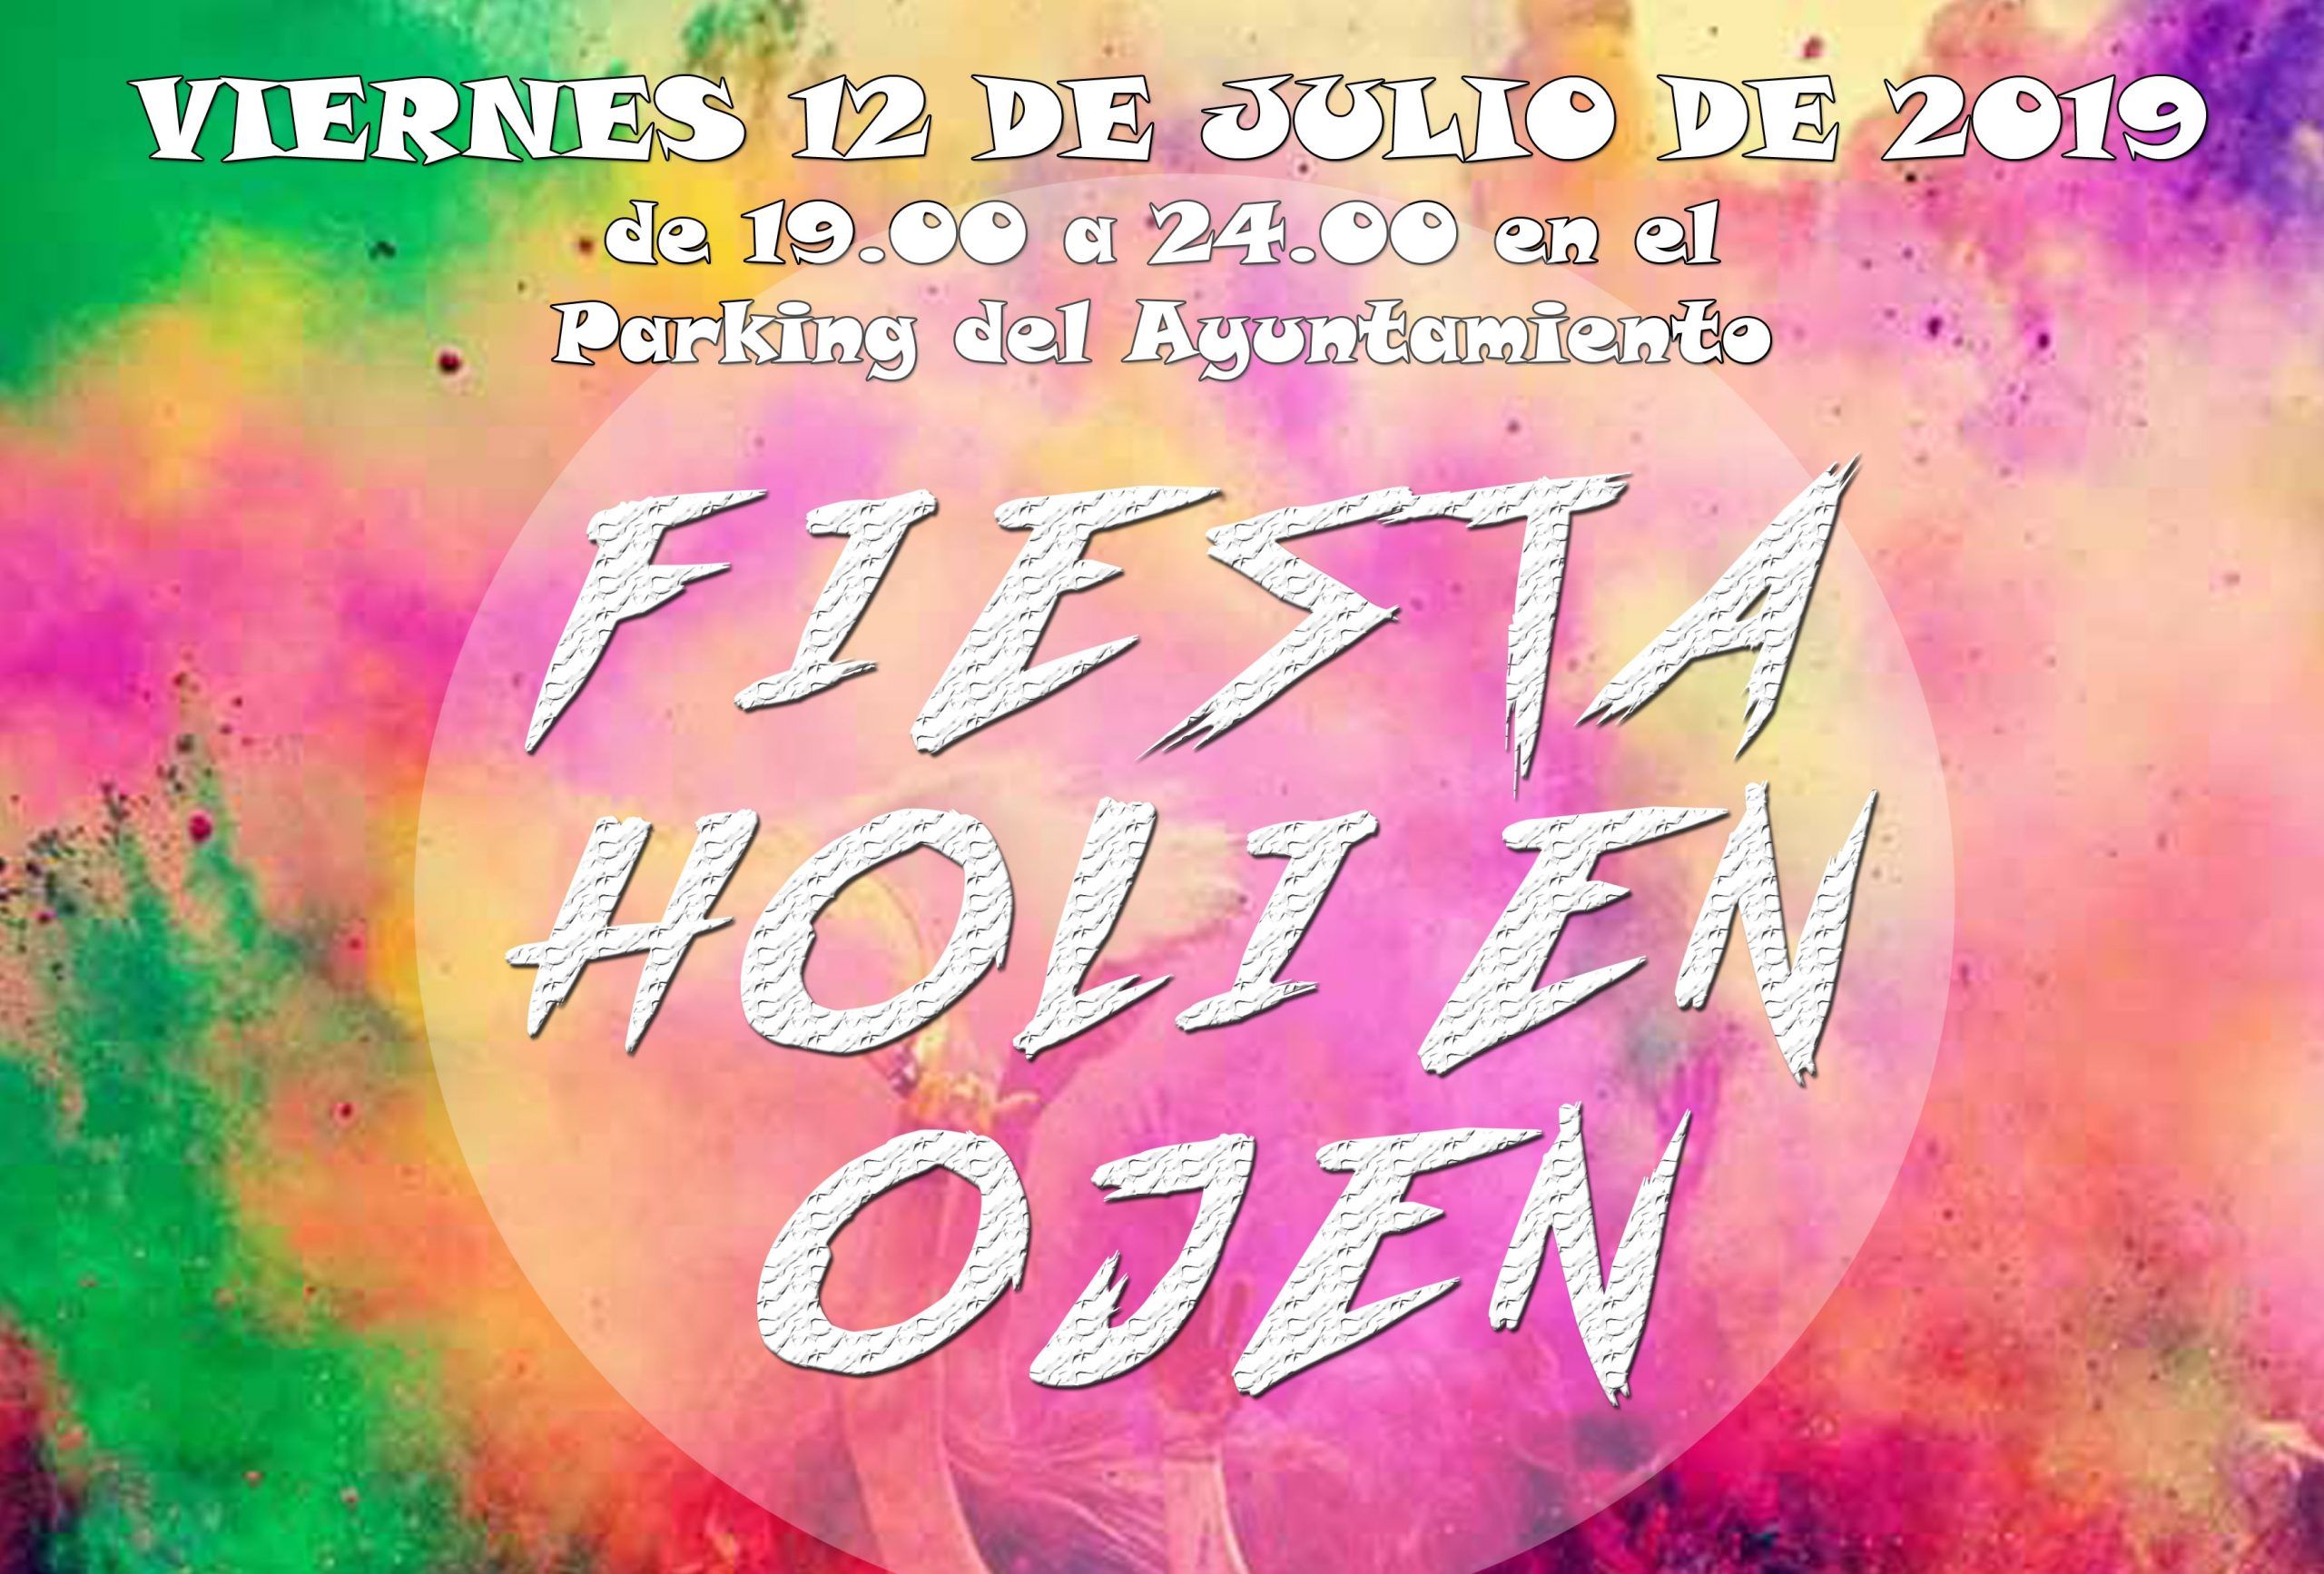 Fiesta Holi gratis para toda la familia en Ojén